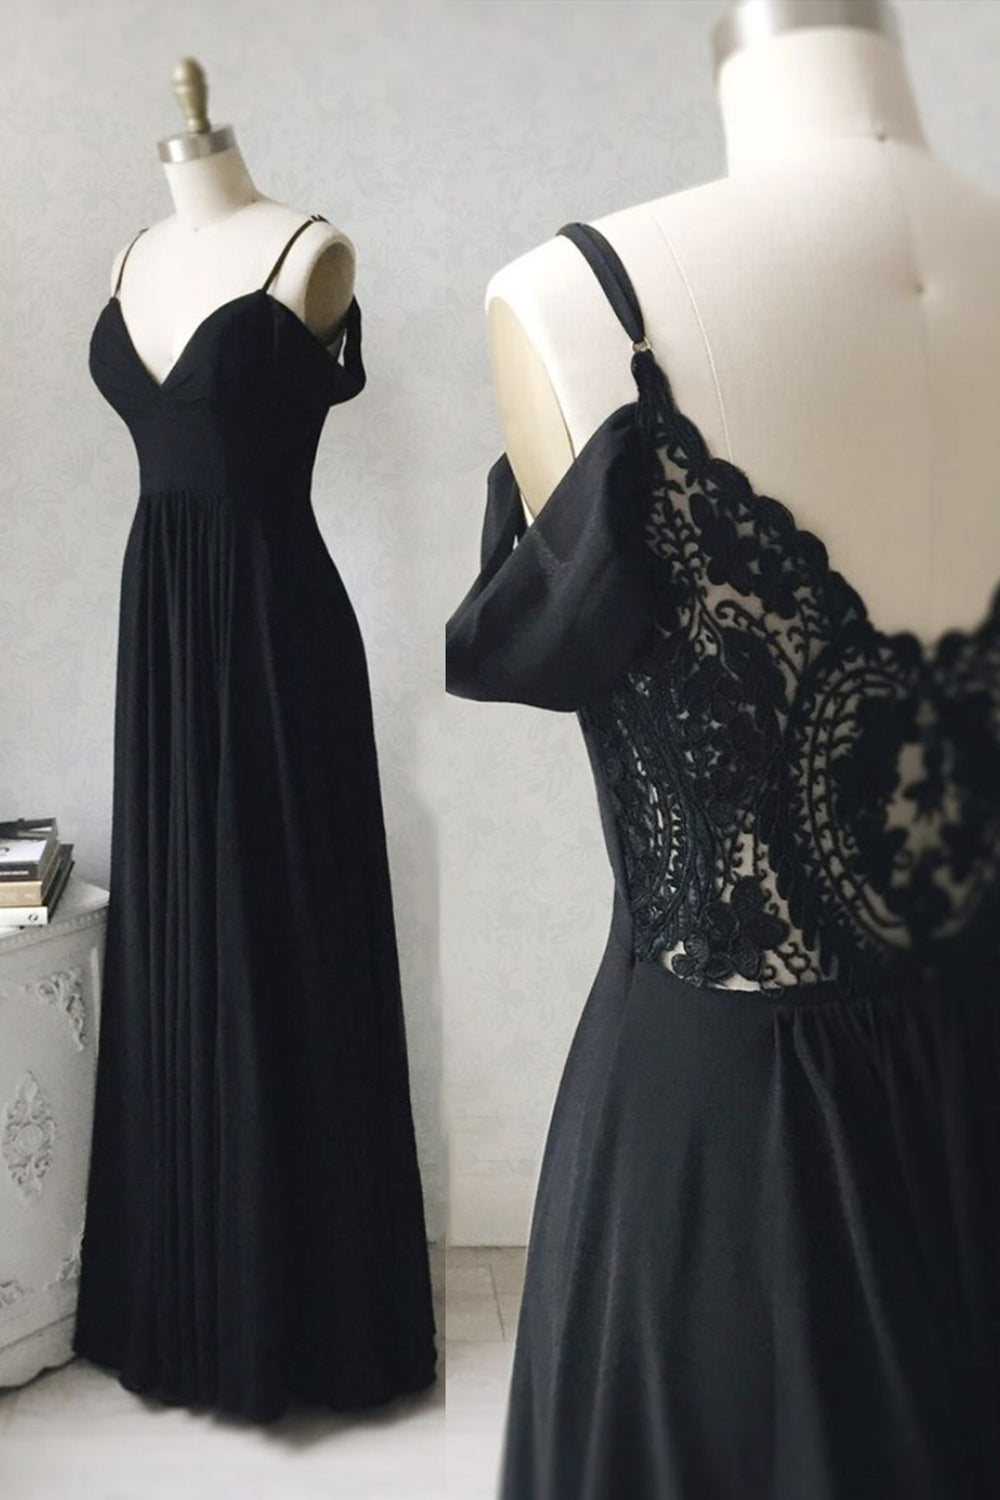 Elegant Off the Shoulder Black Long Prom Dresses with Lace Back, Off Shoulder Black Lace Formal Evening Dresses